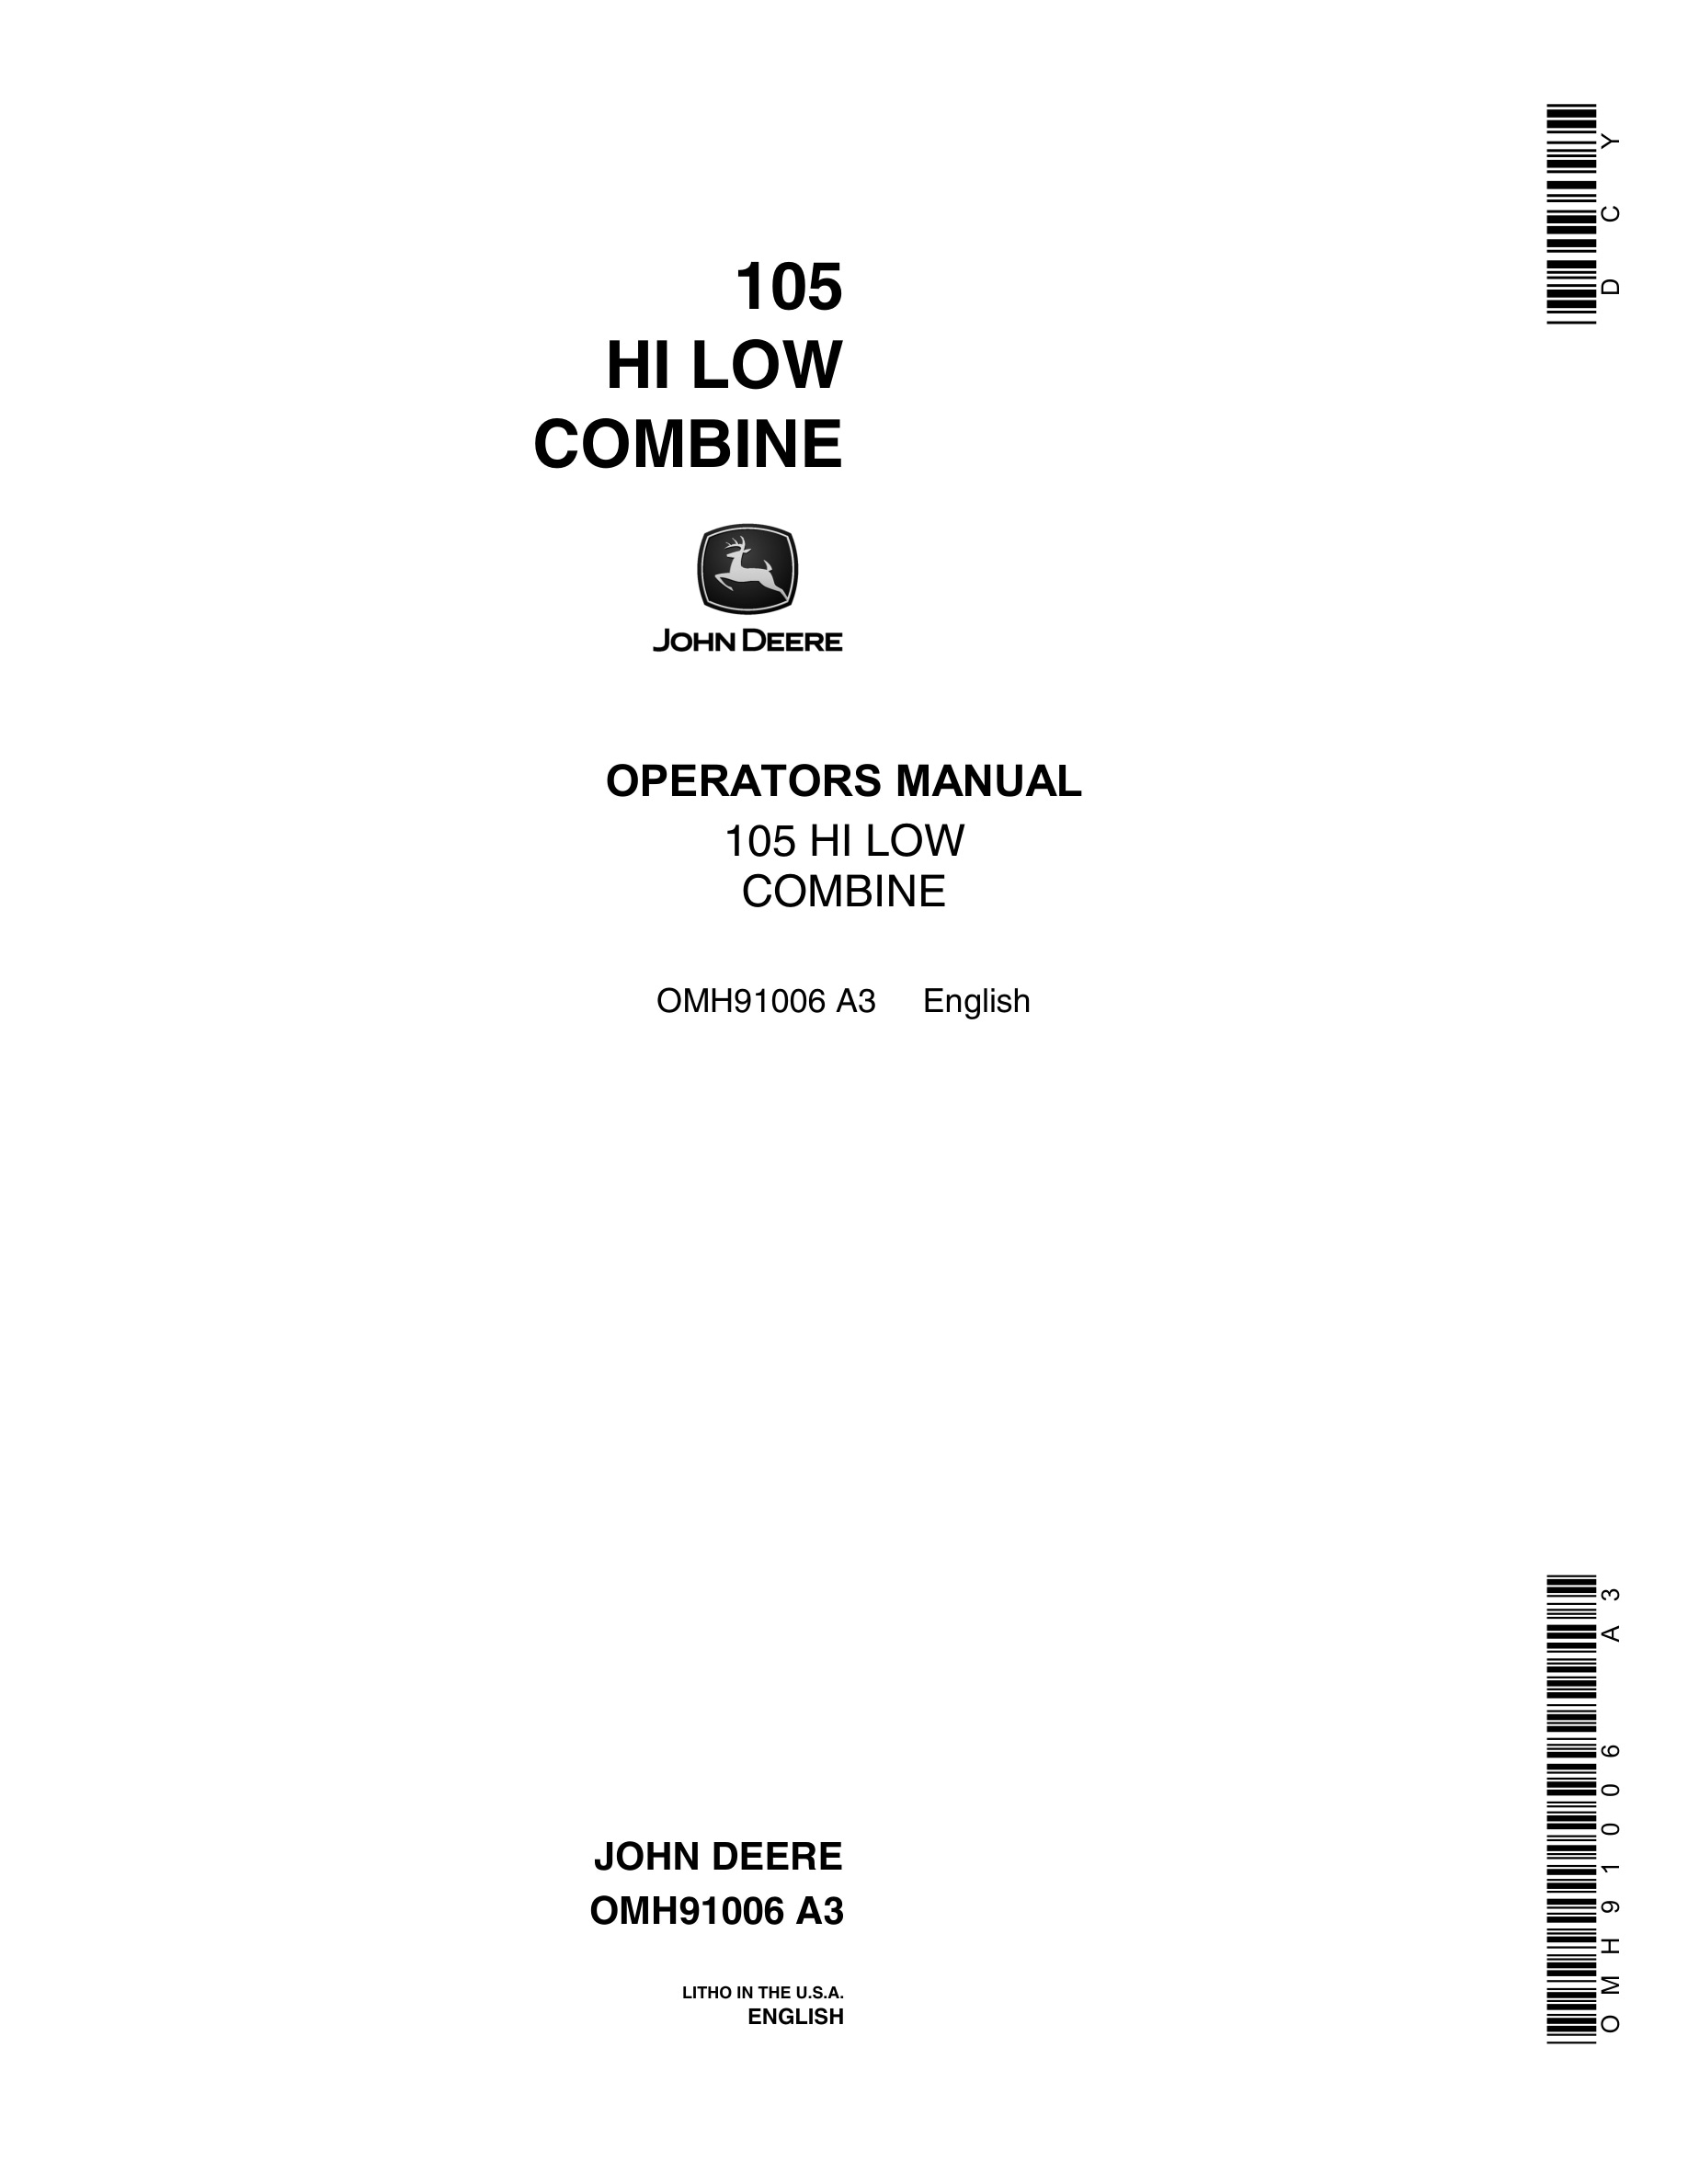 John Deere 105 HI LOW Combine Operator Manual OMH91006-1